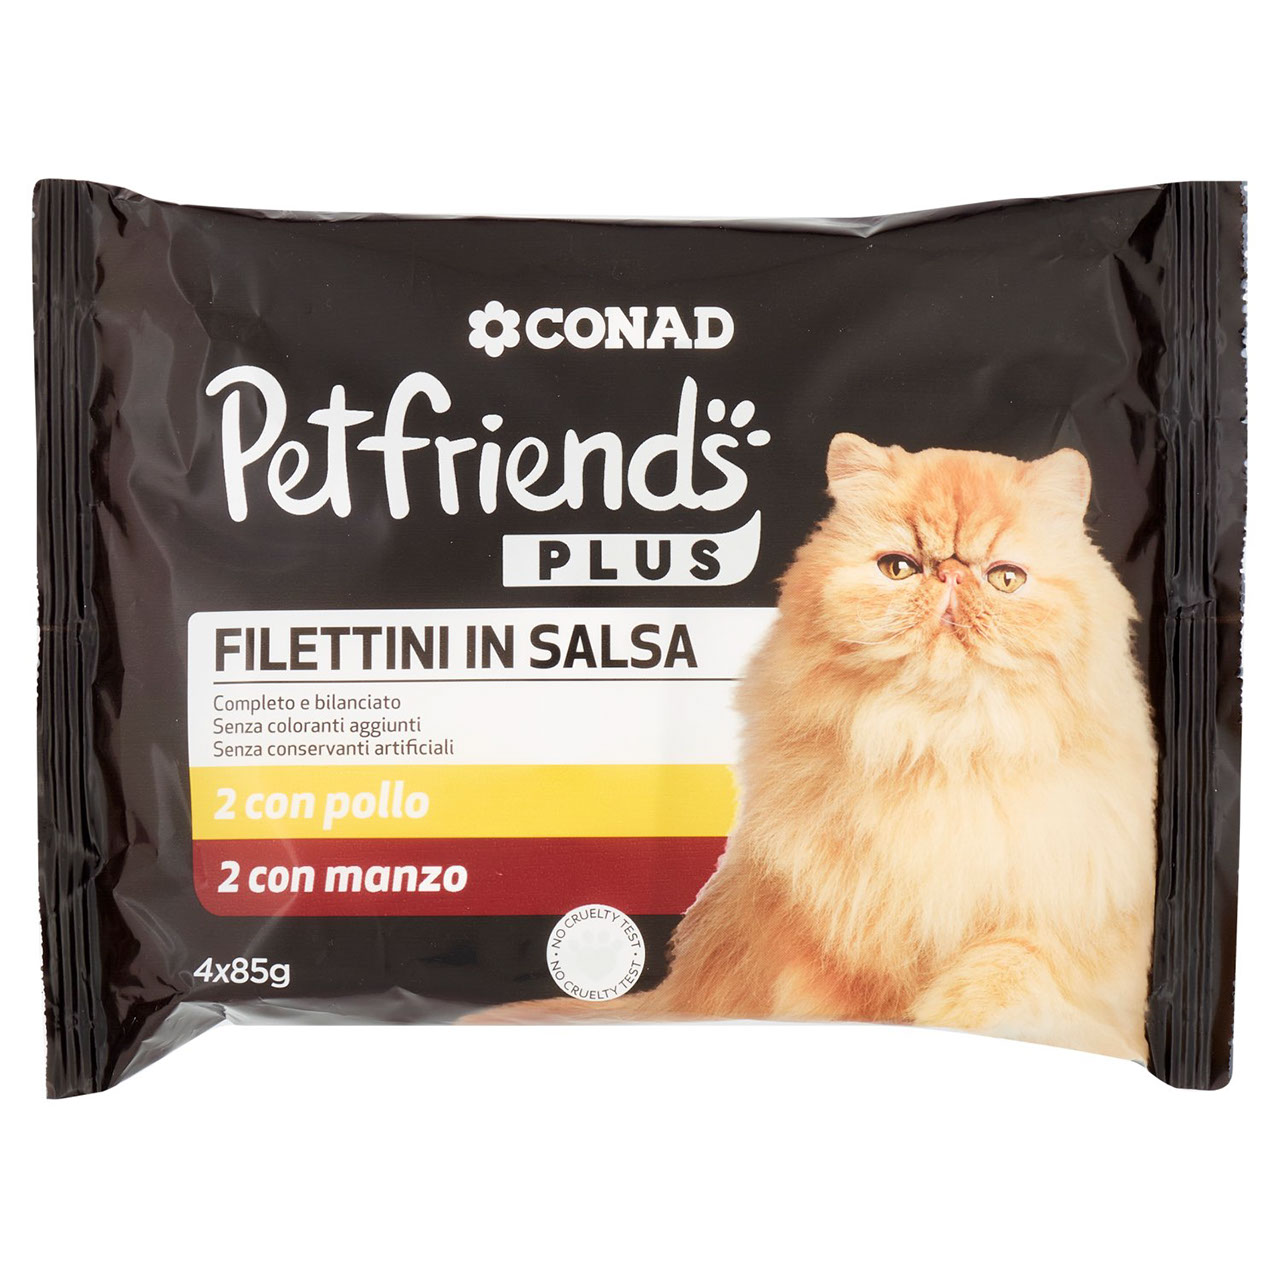 Petfriends Plus Filettini in Salsa 2 pollo 2 manzo